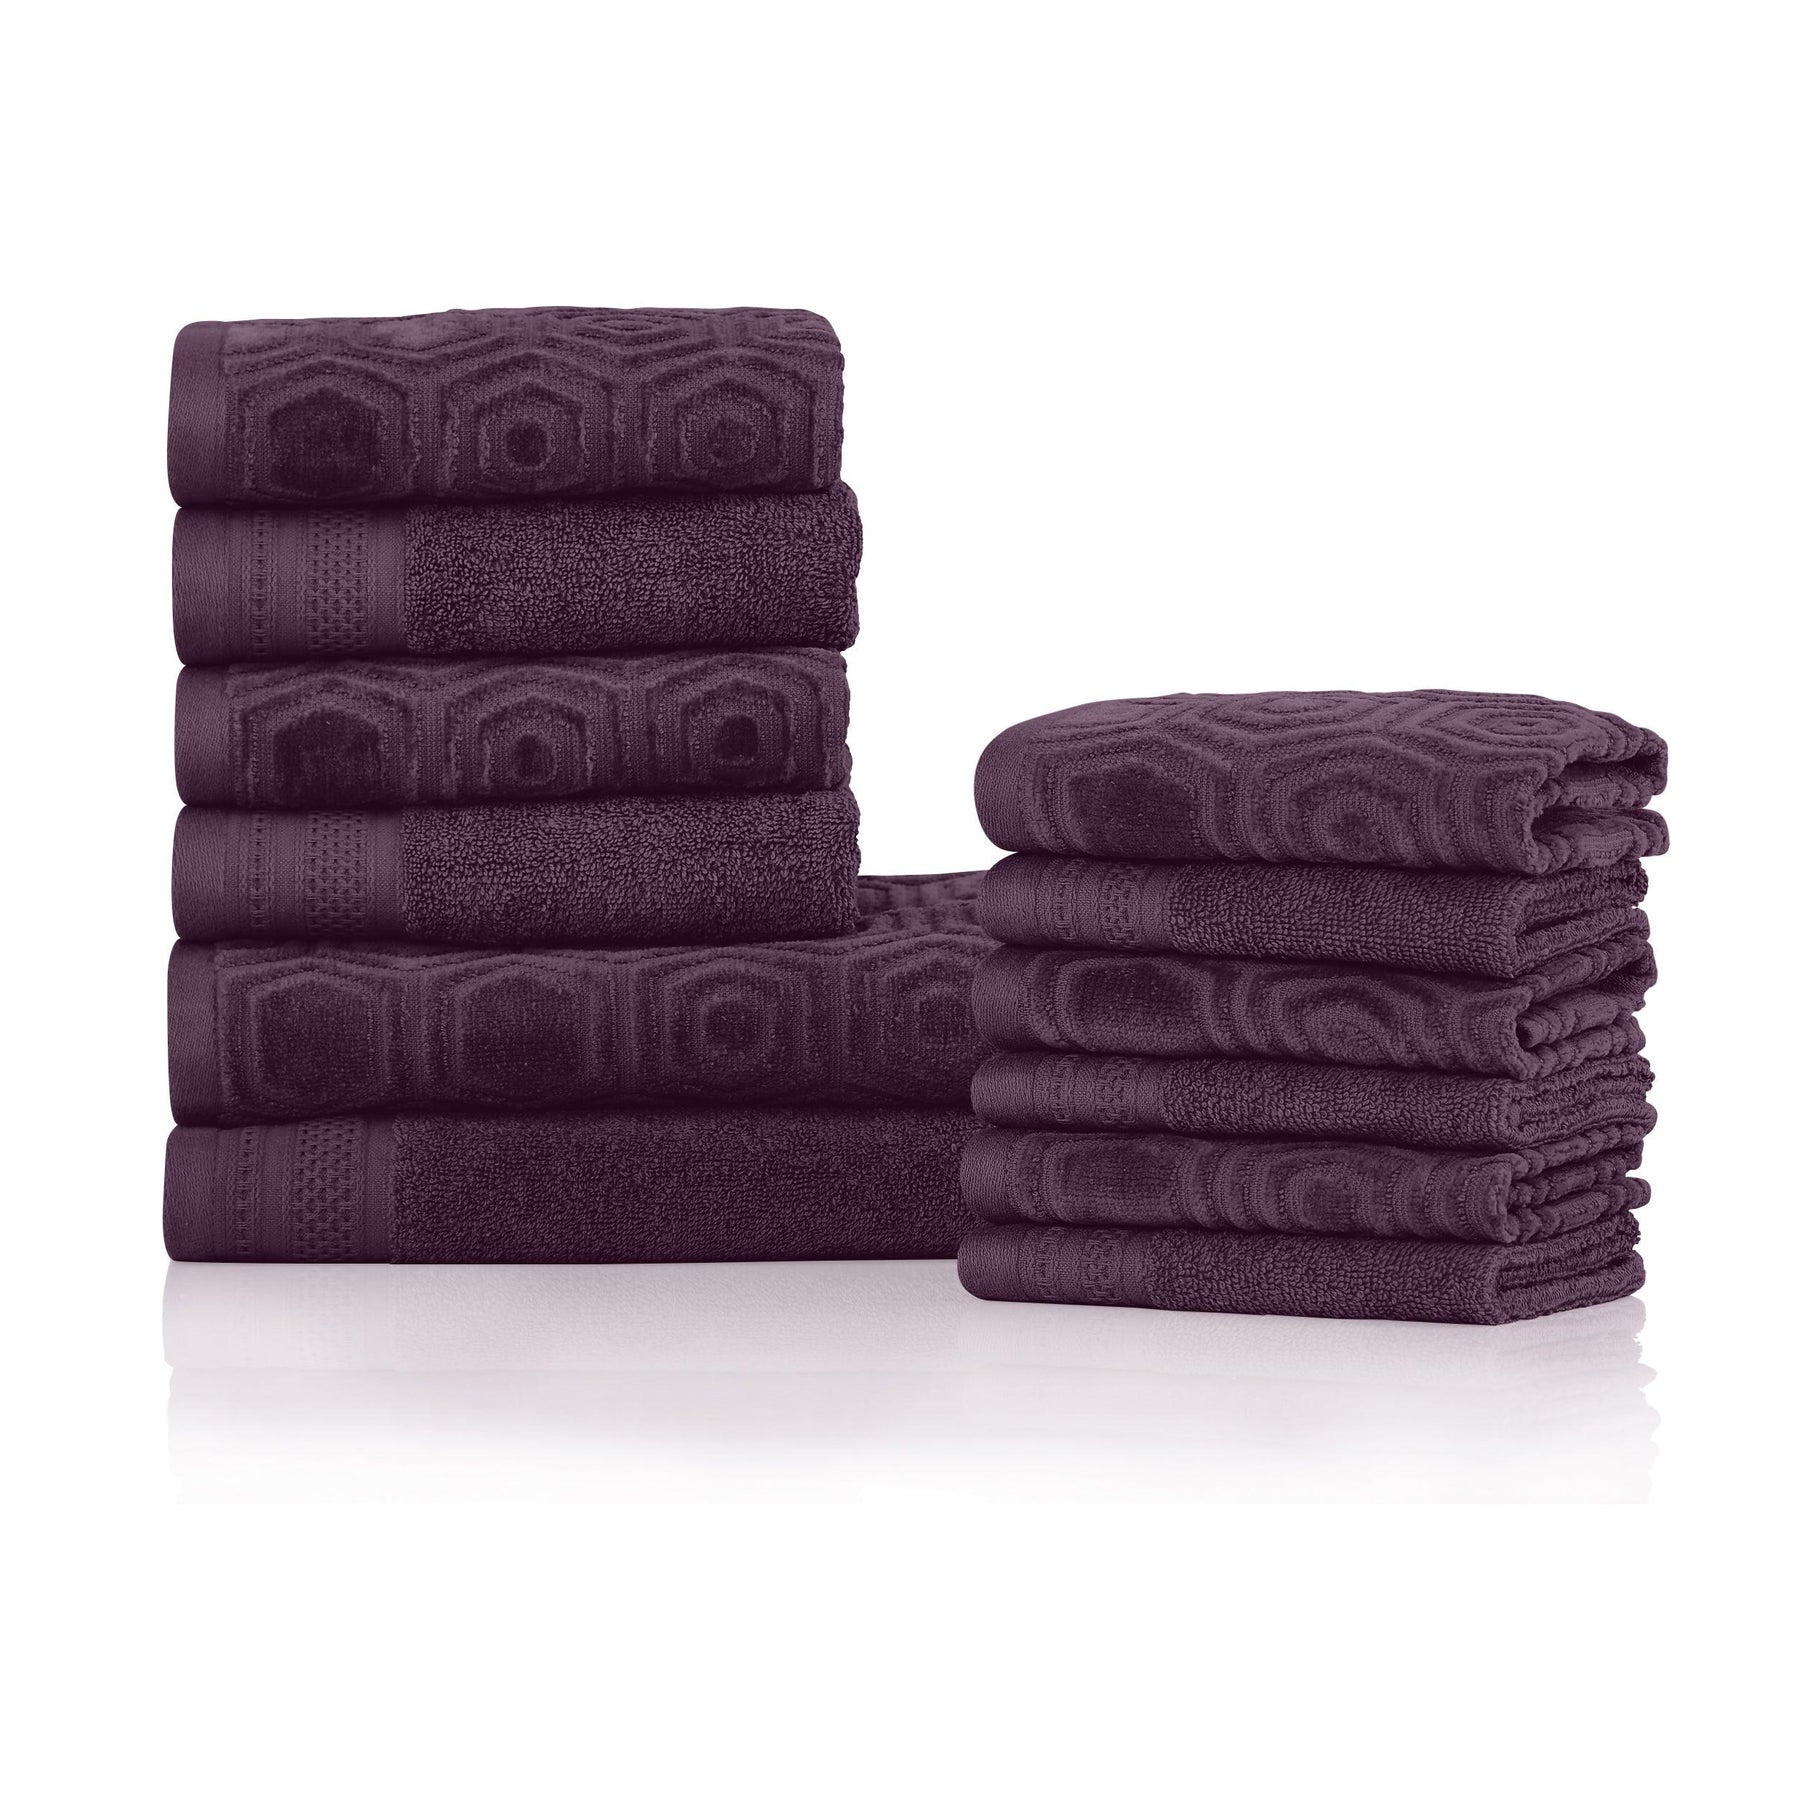 Honeycomb Jacquard 12-Piece Cotton Velour Bath Towel Set - Blackberry Wine